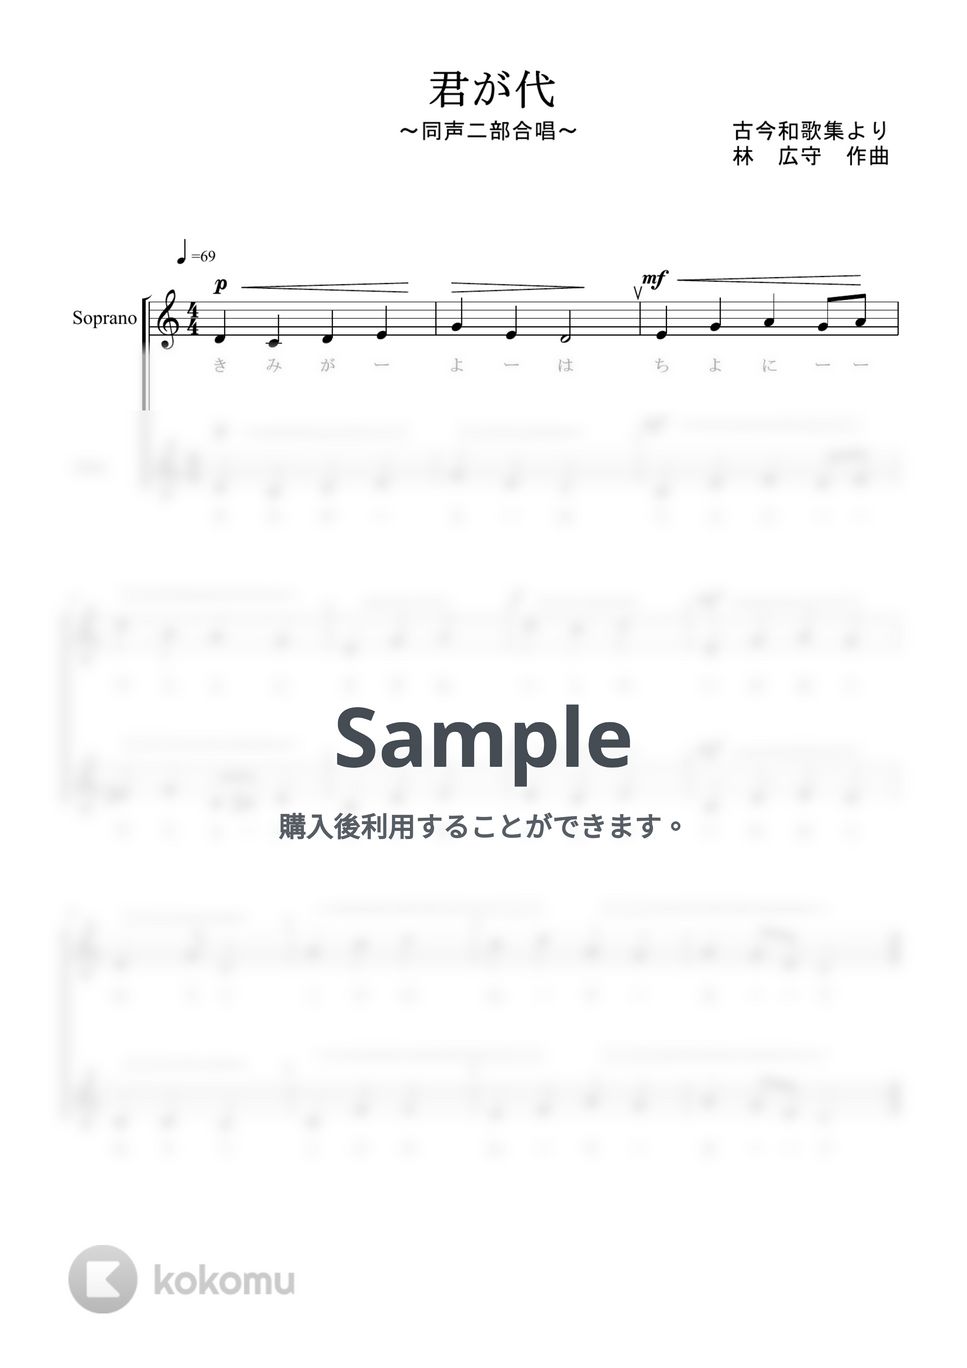 国歌 - 君が代 (同声二部合唱) by kiminabe